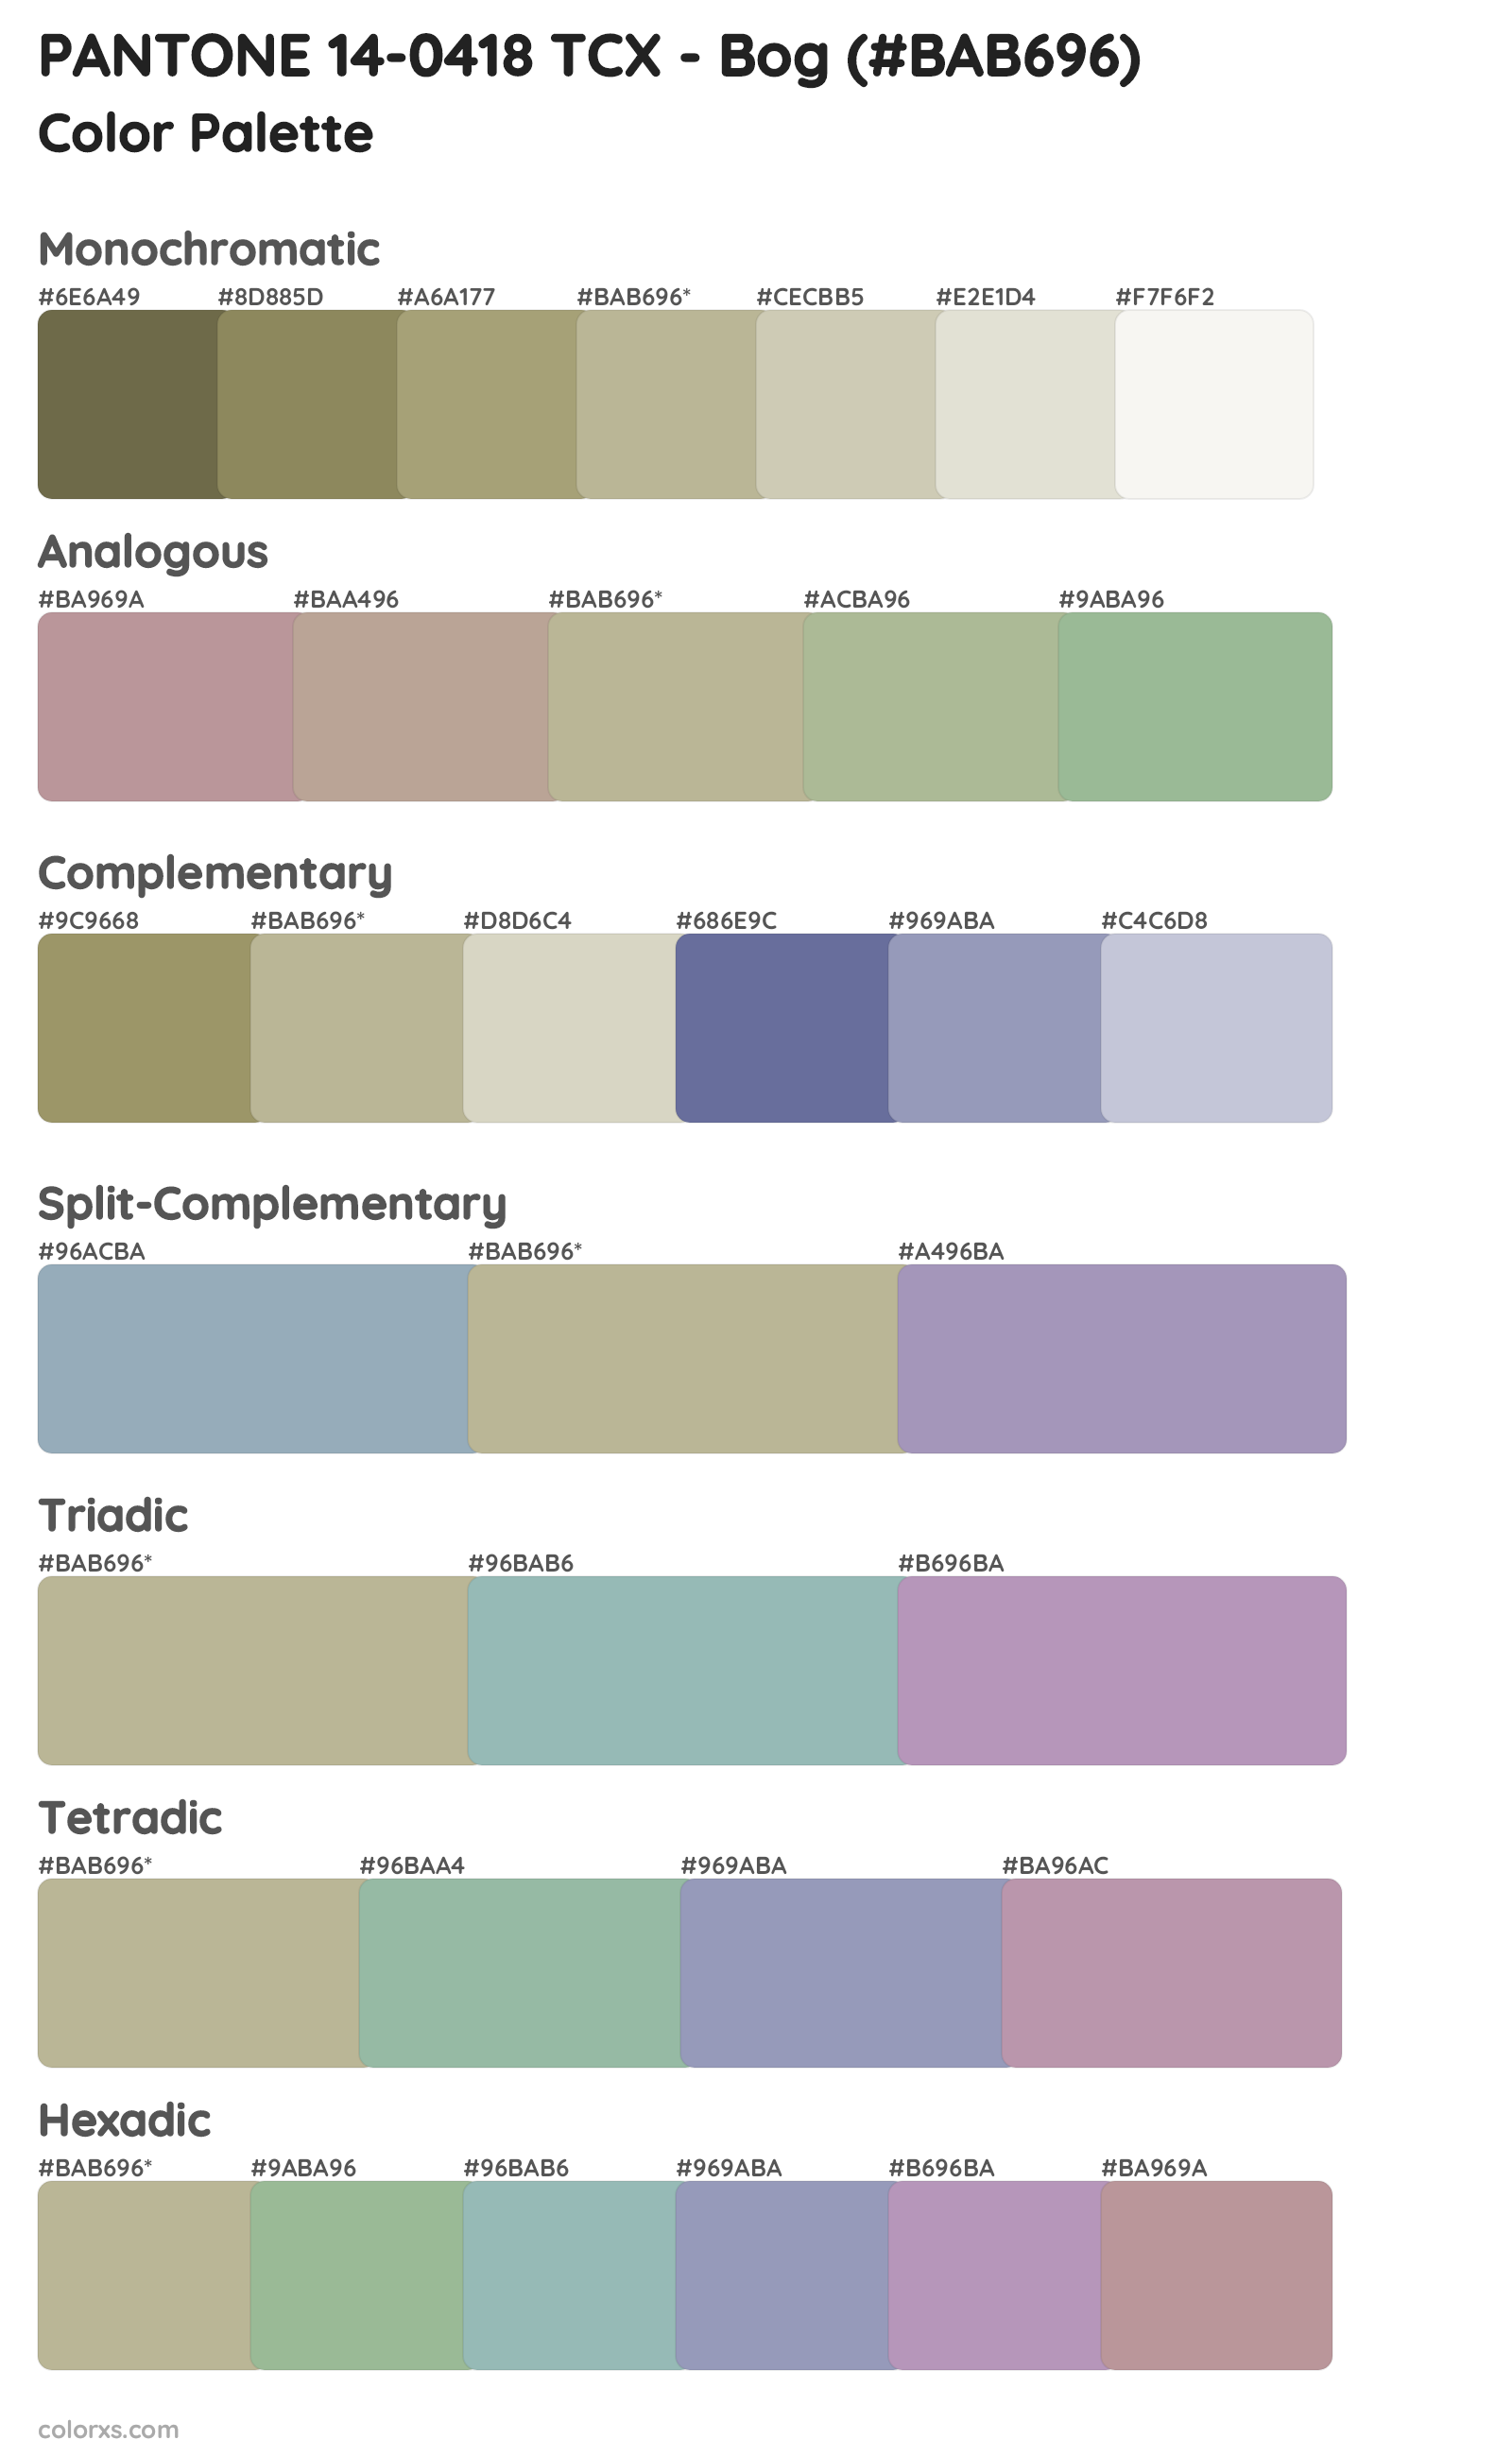 PANTONE 14-0418 TCX - Bog Color Scheme Palettes